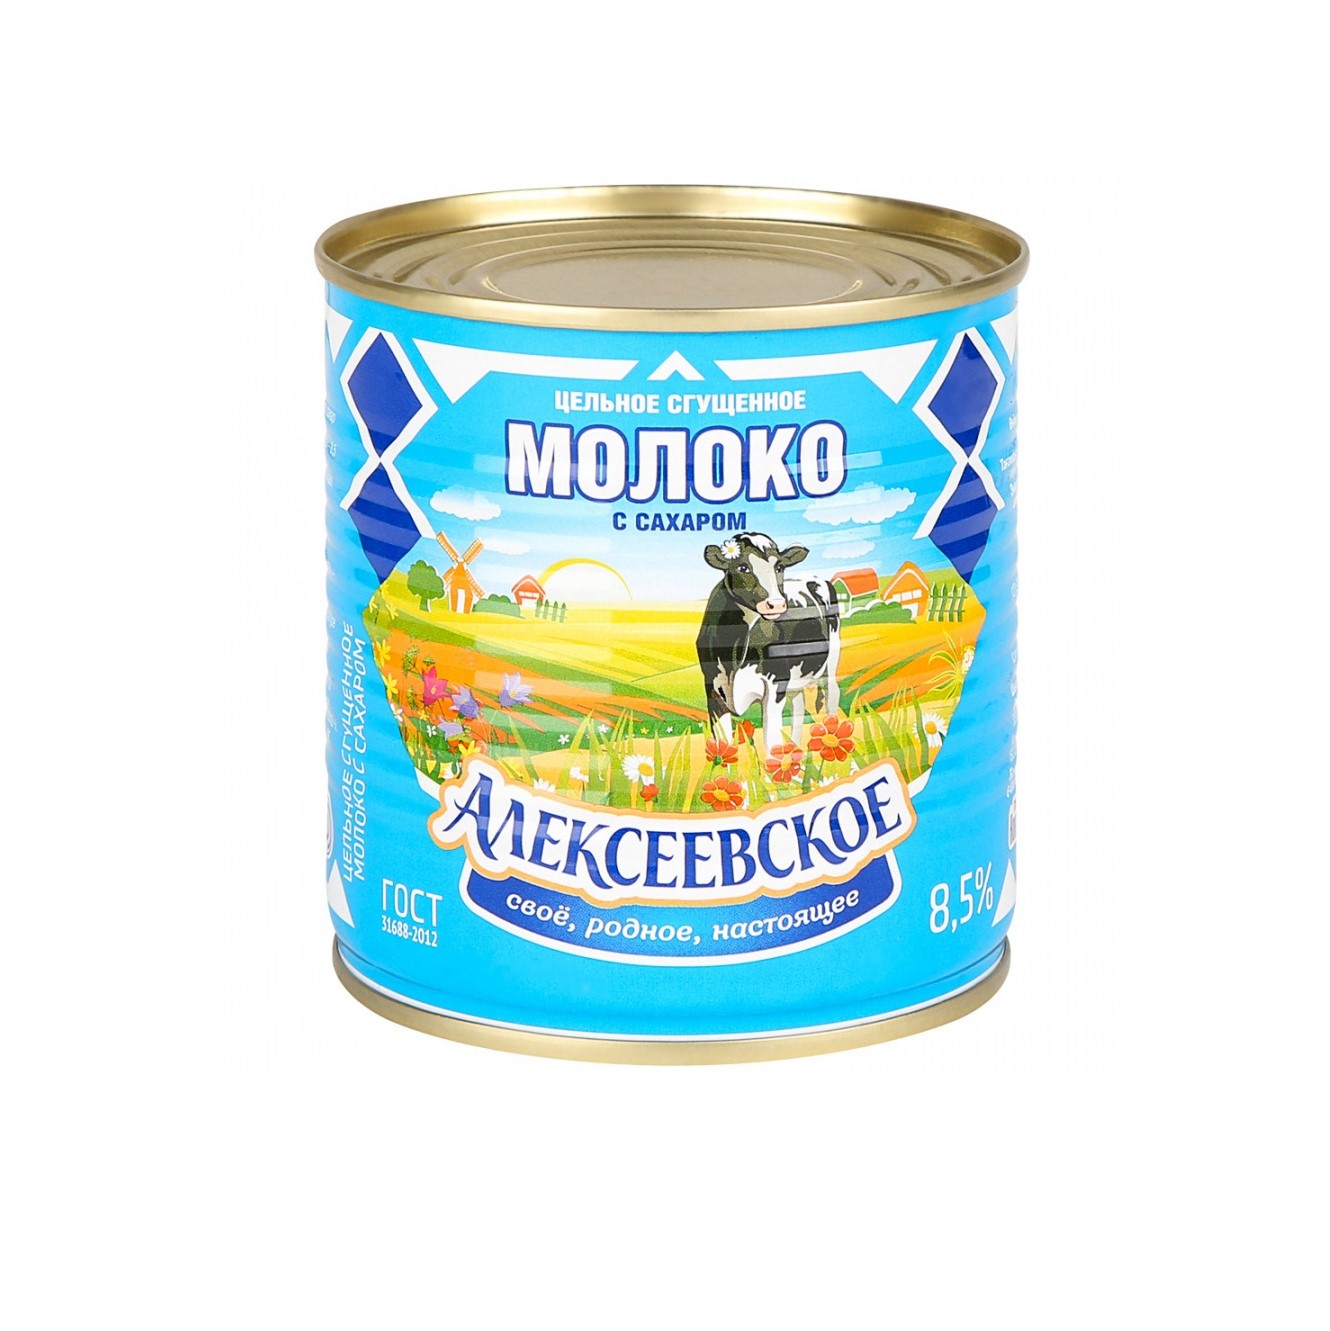 Молоко Алексеевское сгущенное с сахаром 8,5%, 360 г сливки сгущенные батькин резерв с сахаром 19% 360 г